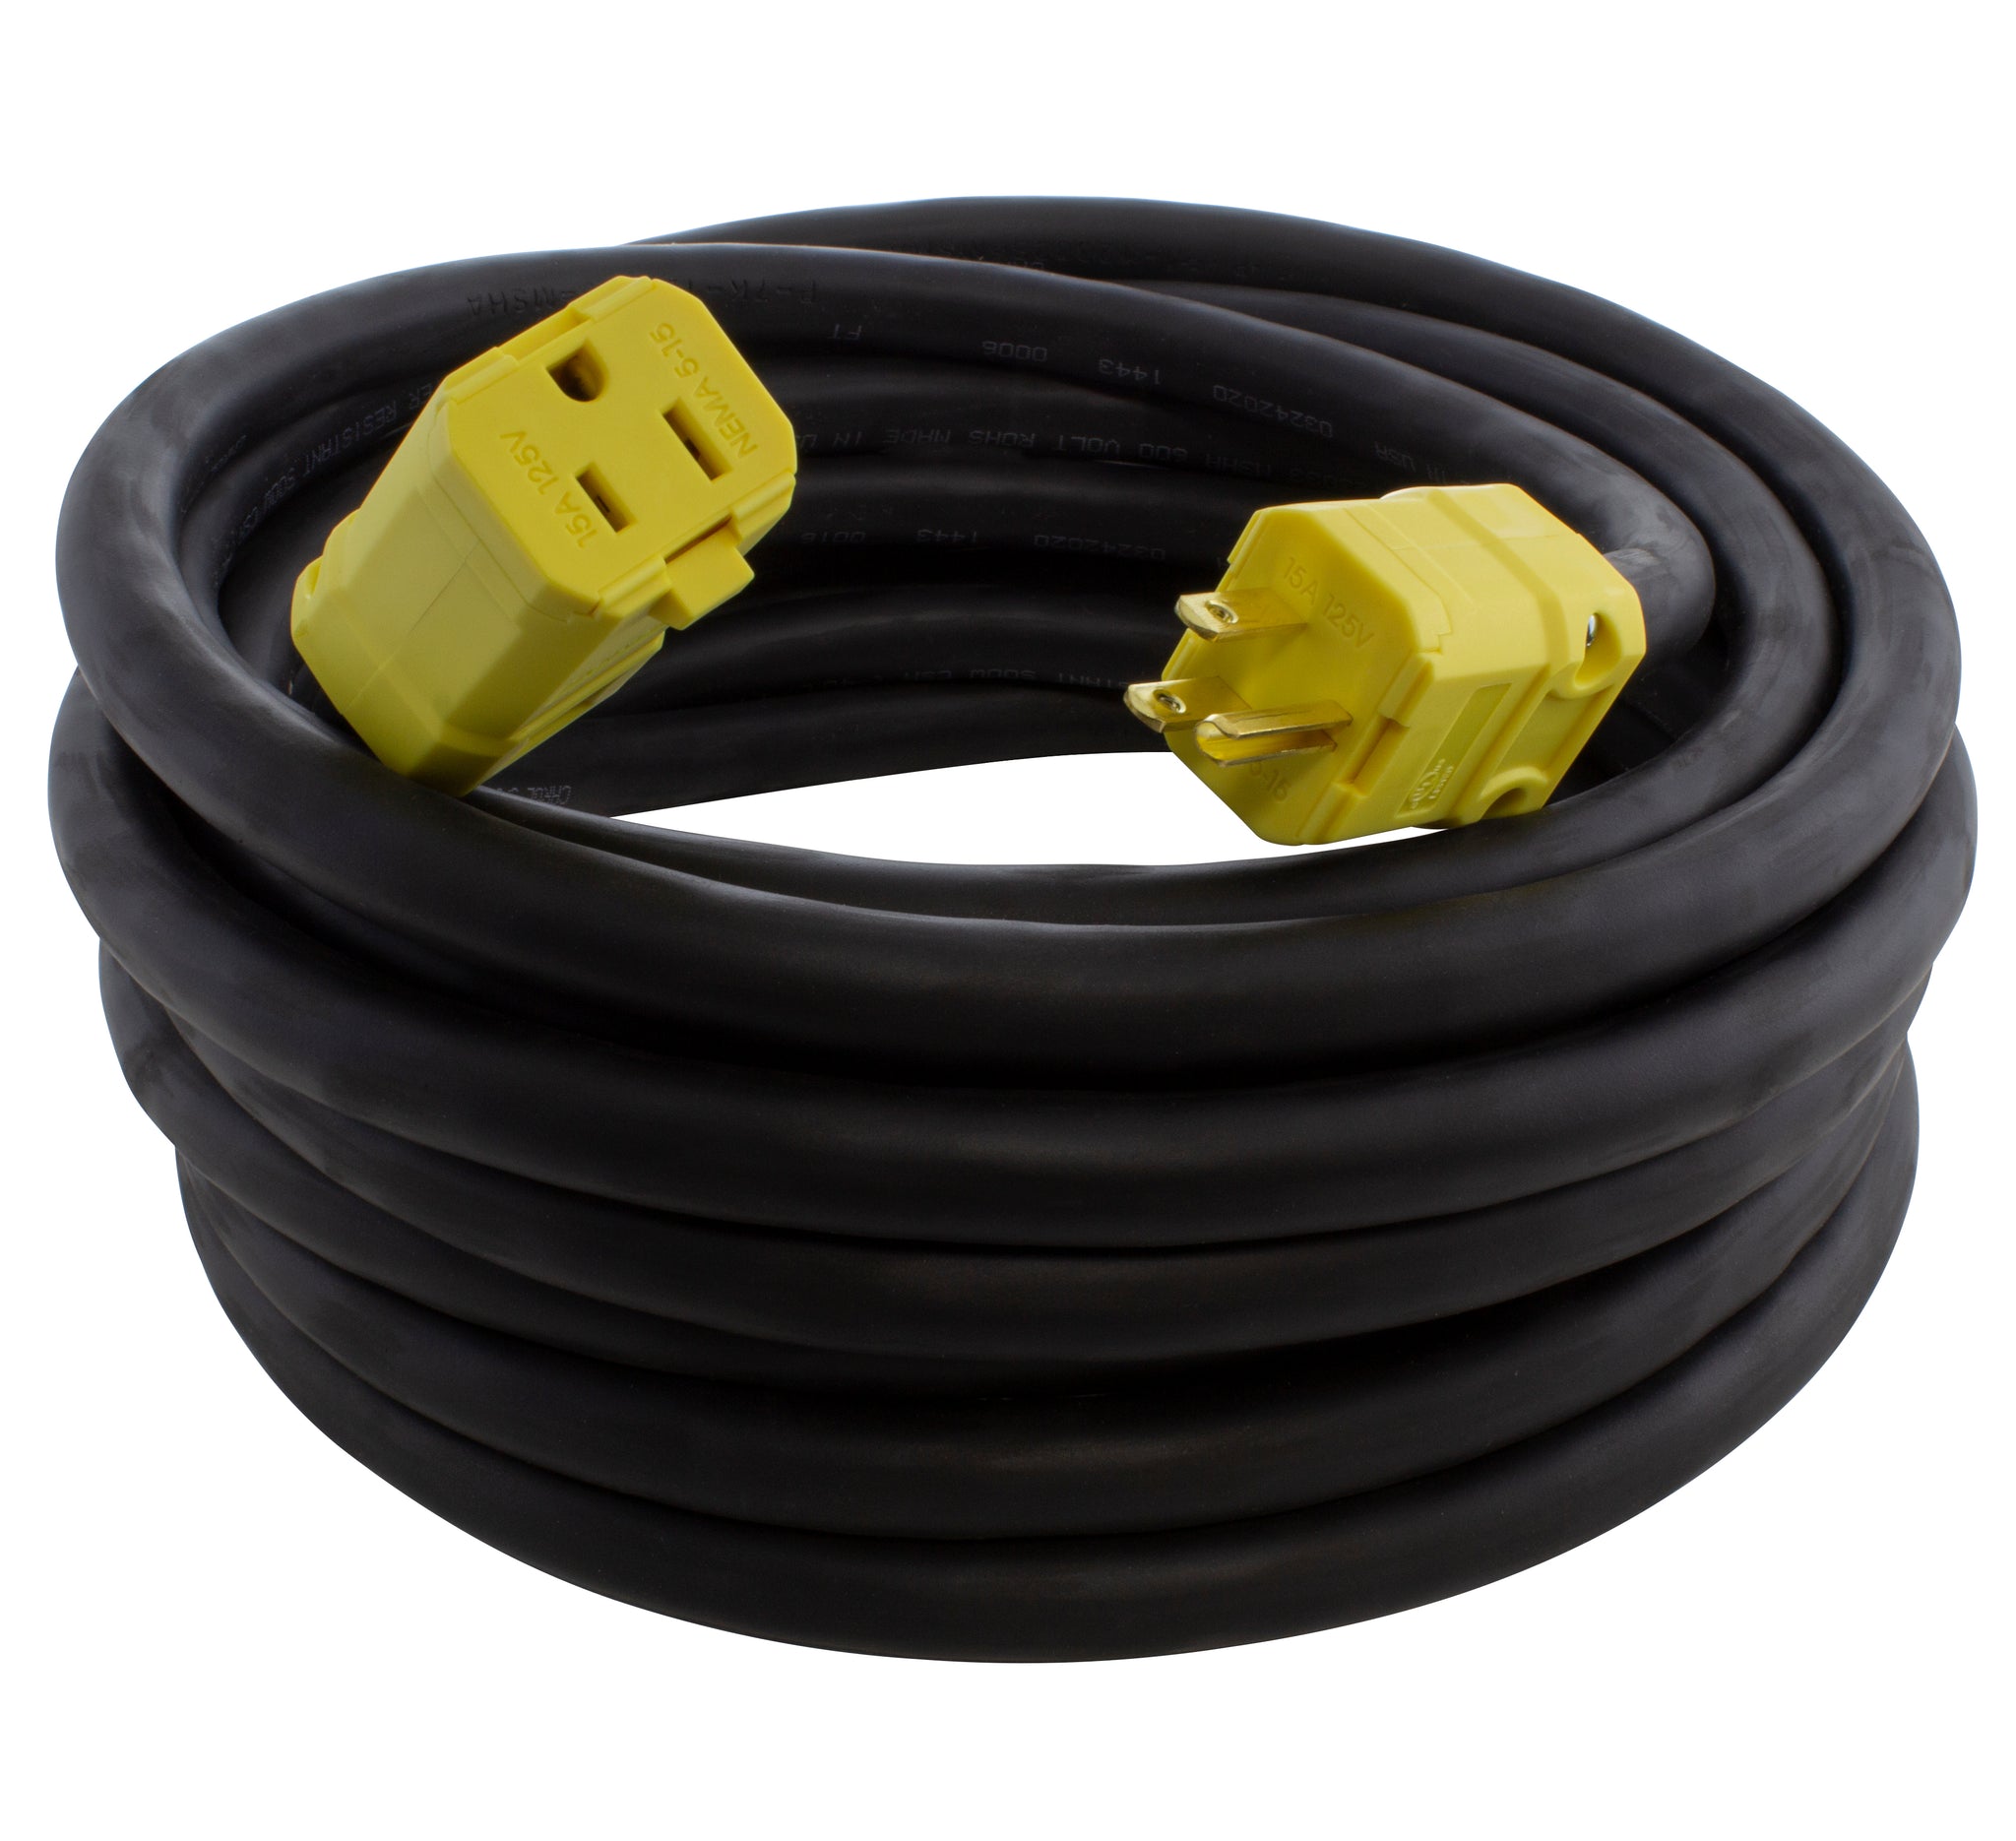 AC Works 25 ft. SOOW 10/3 NEMA 5-15 15 Amp 125-Volt Rubber Extension Cord, Black